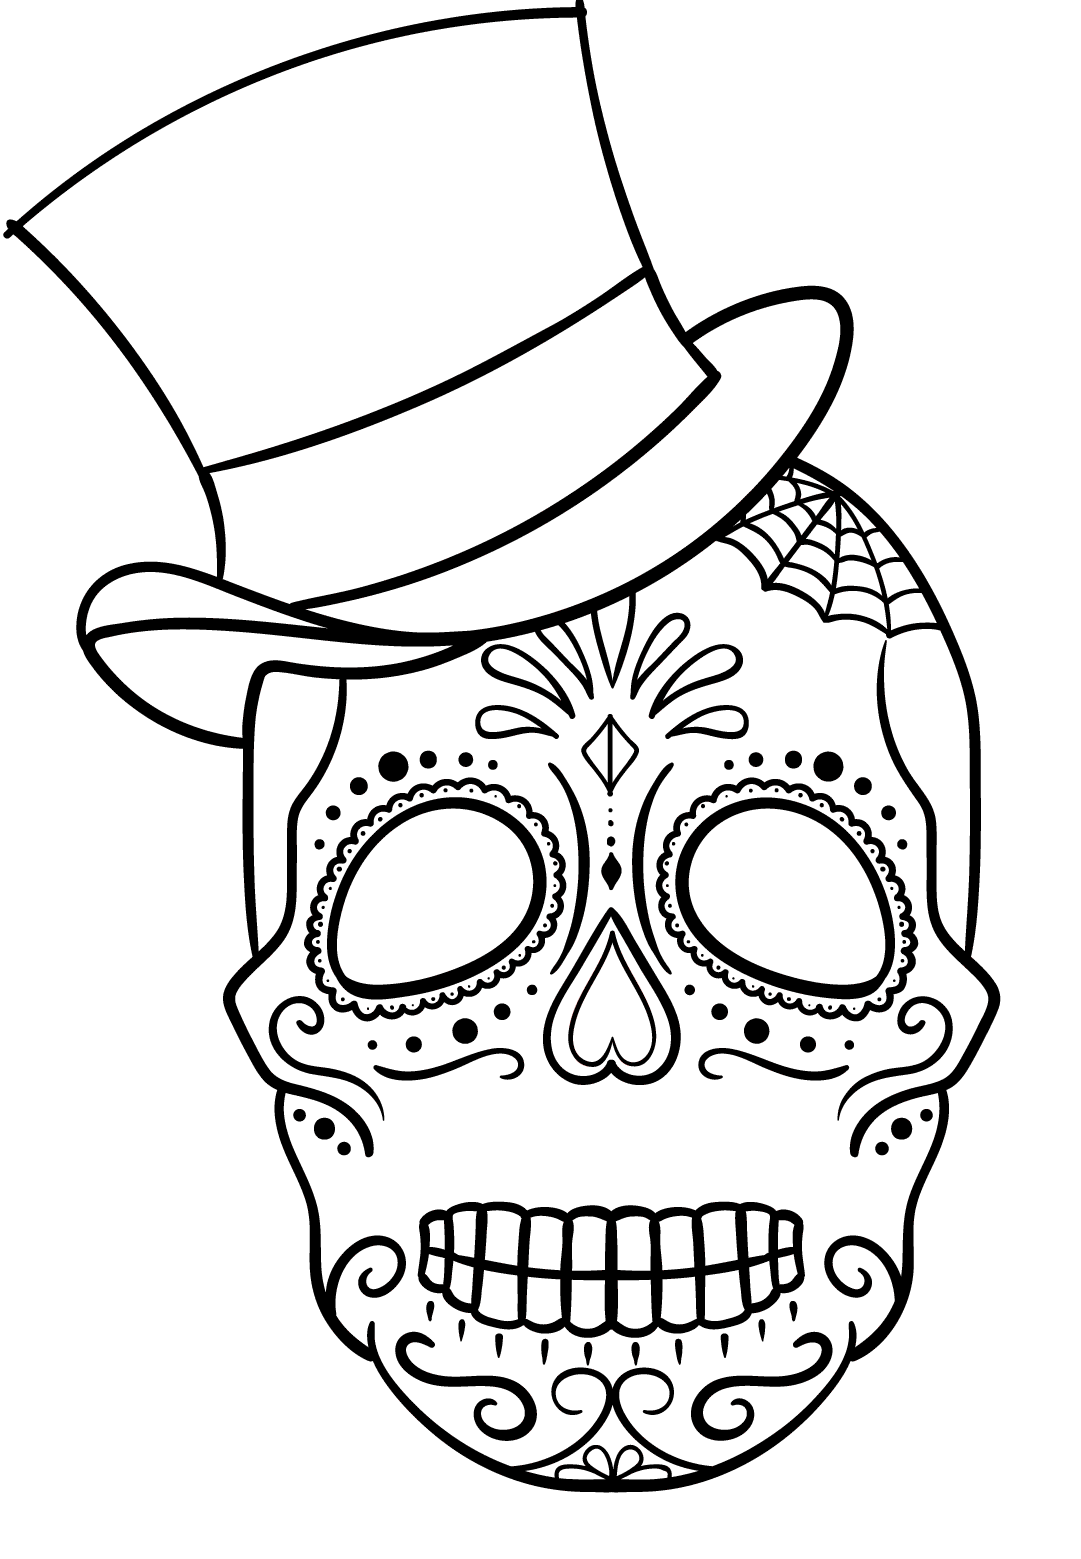 Sugar Skull With Top Hat Calavera Coloring Page